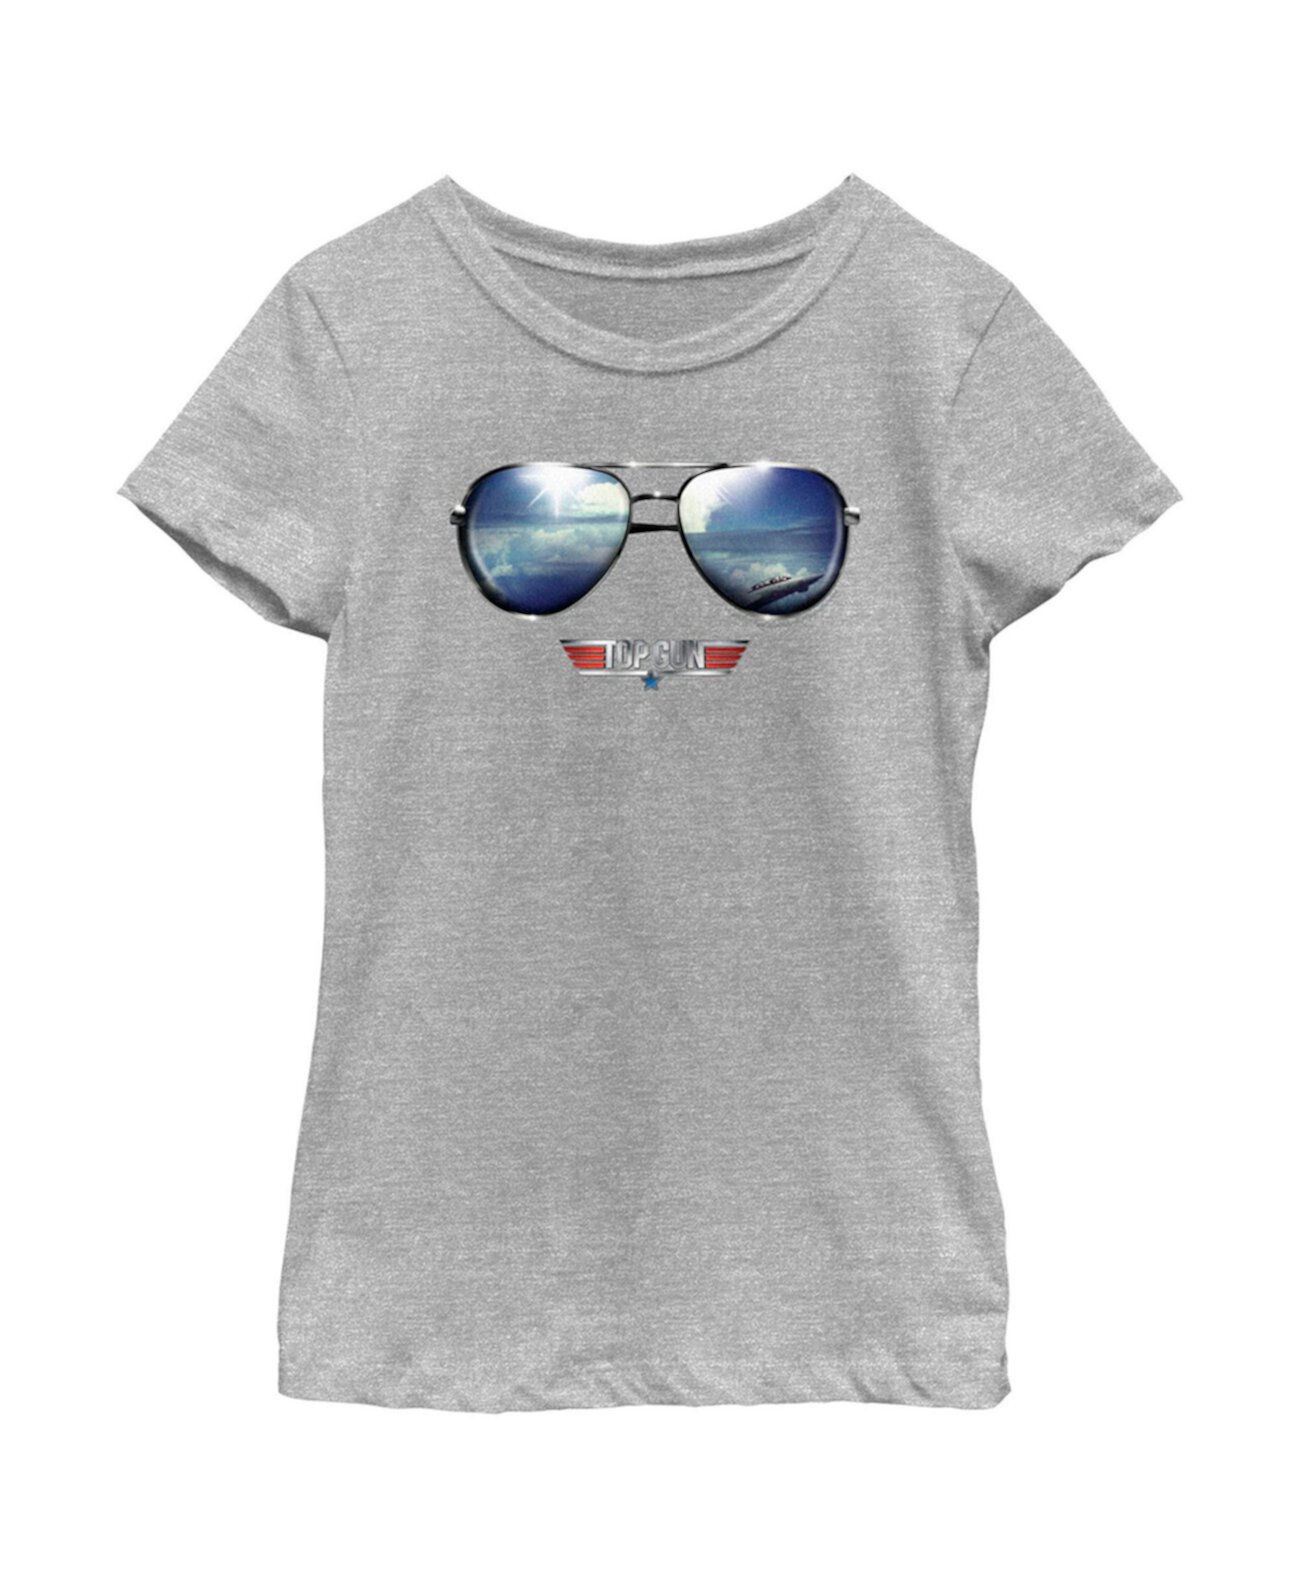 Детская футболка Top Gun Aviator с отражающим логотипом и солнцезащитными очками для девочек Paramount